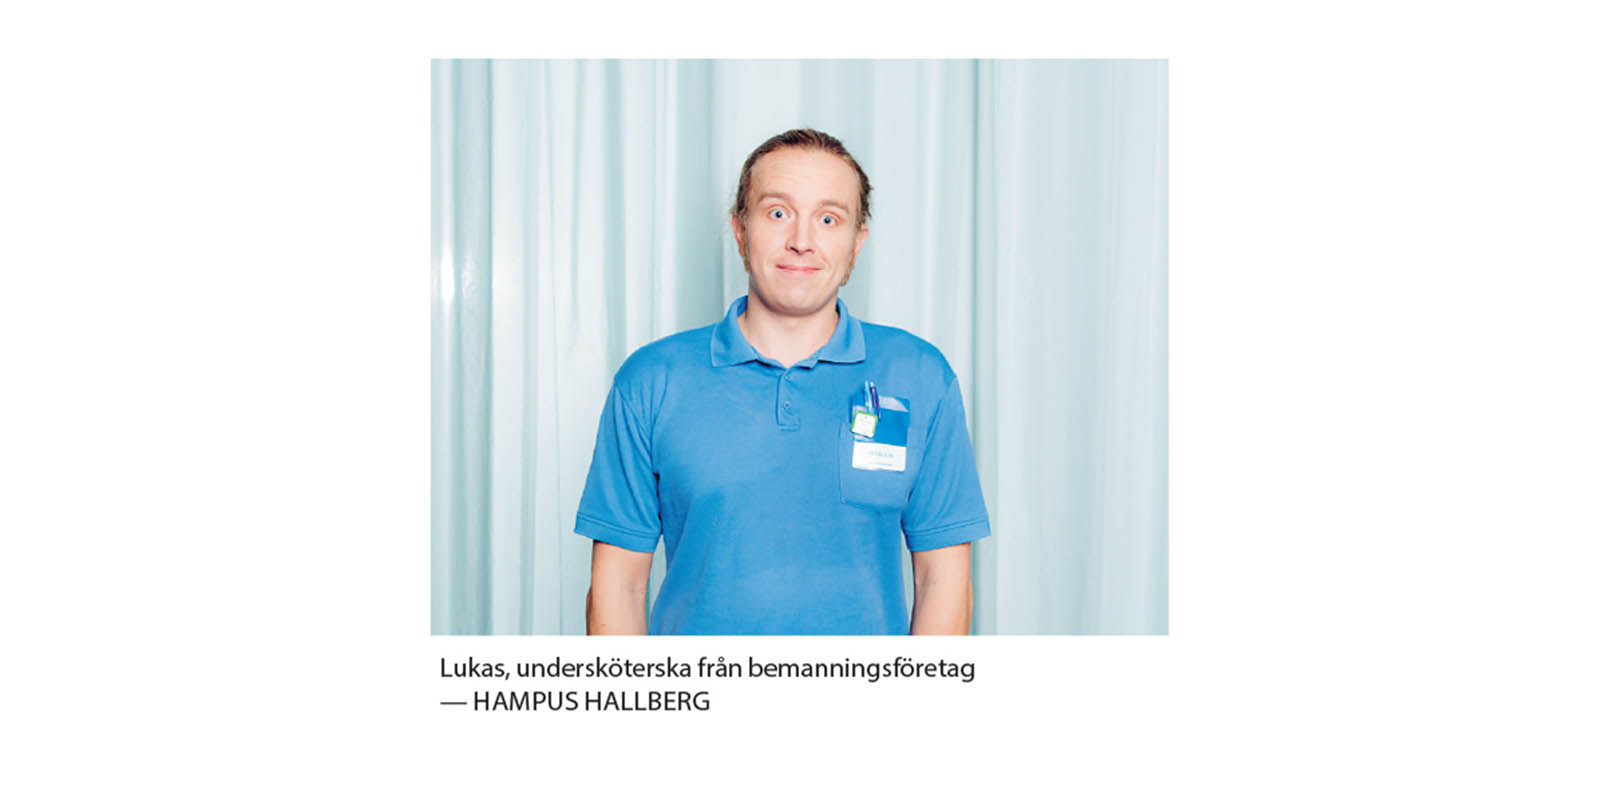 Hampus Hallberg